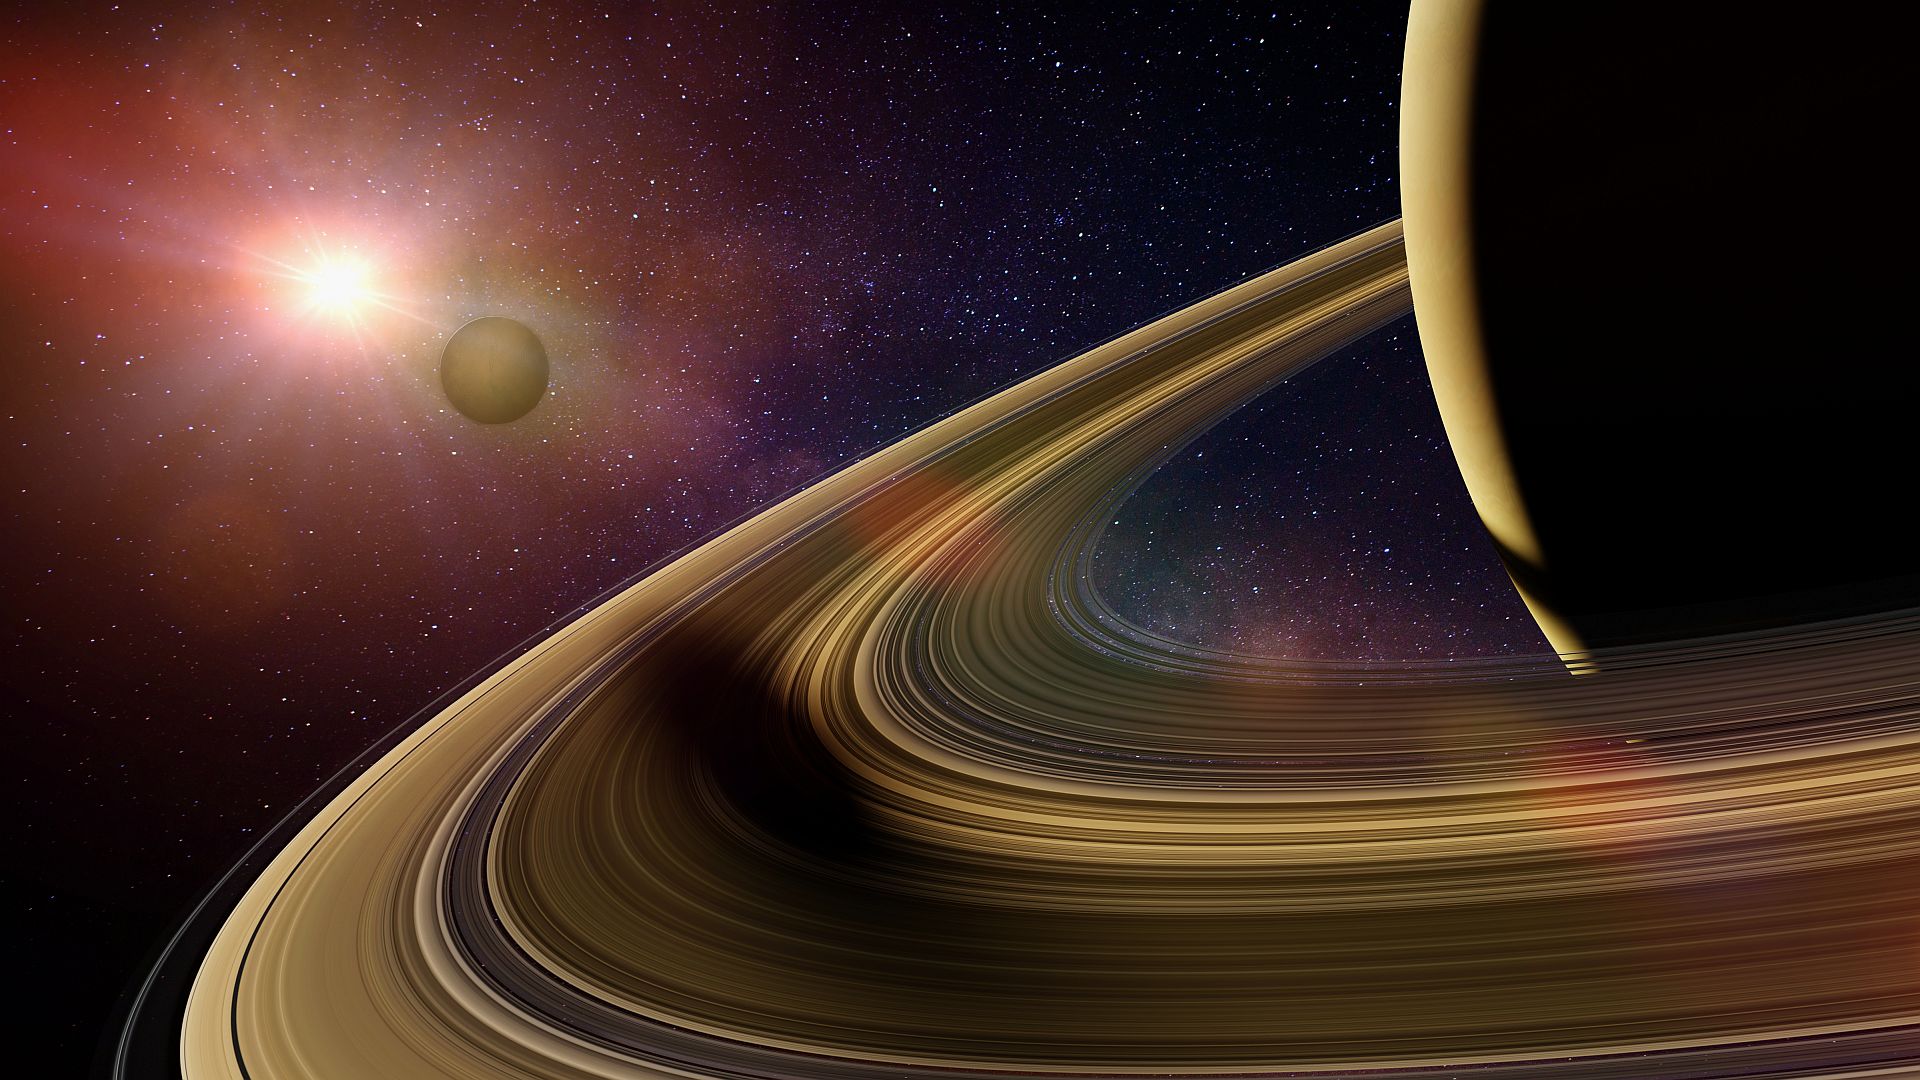 Saturn - pierścienie planety "dzwonią" i wiemy, czym to jest spowodowane